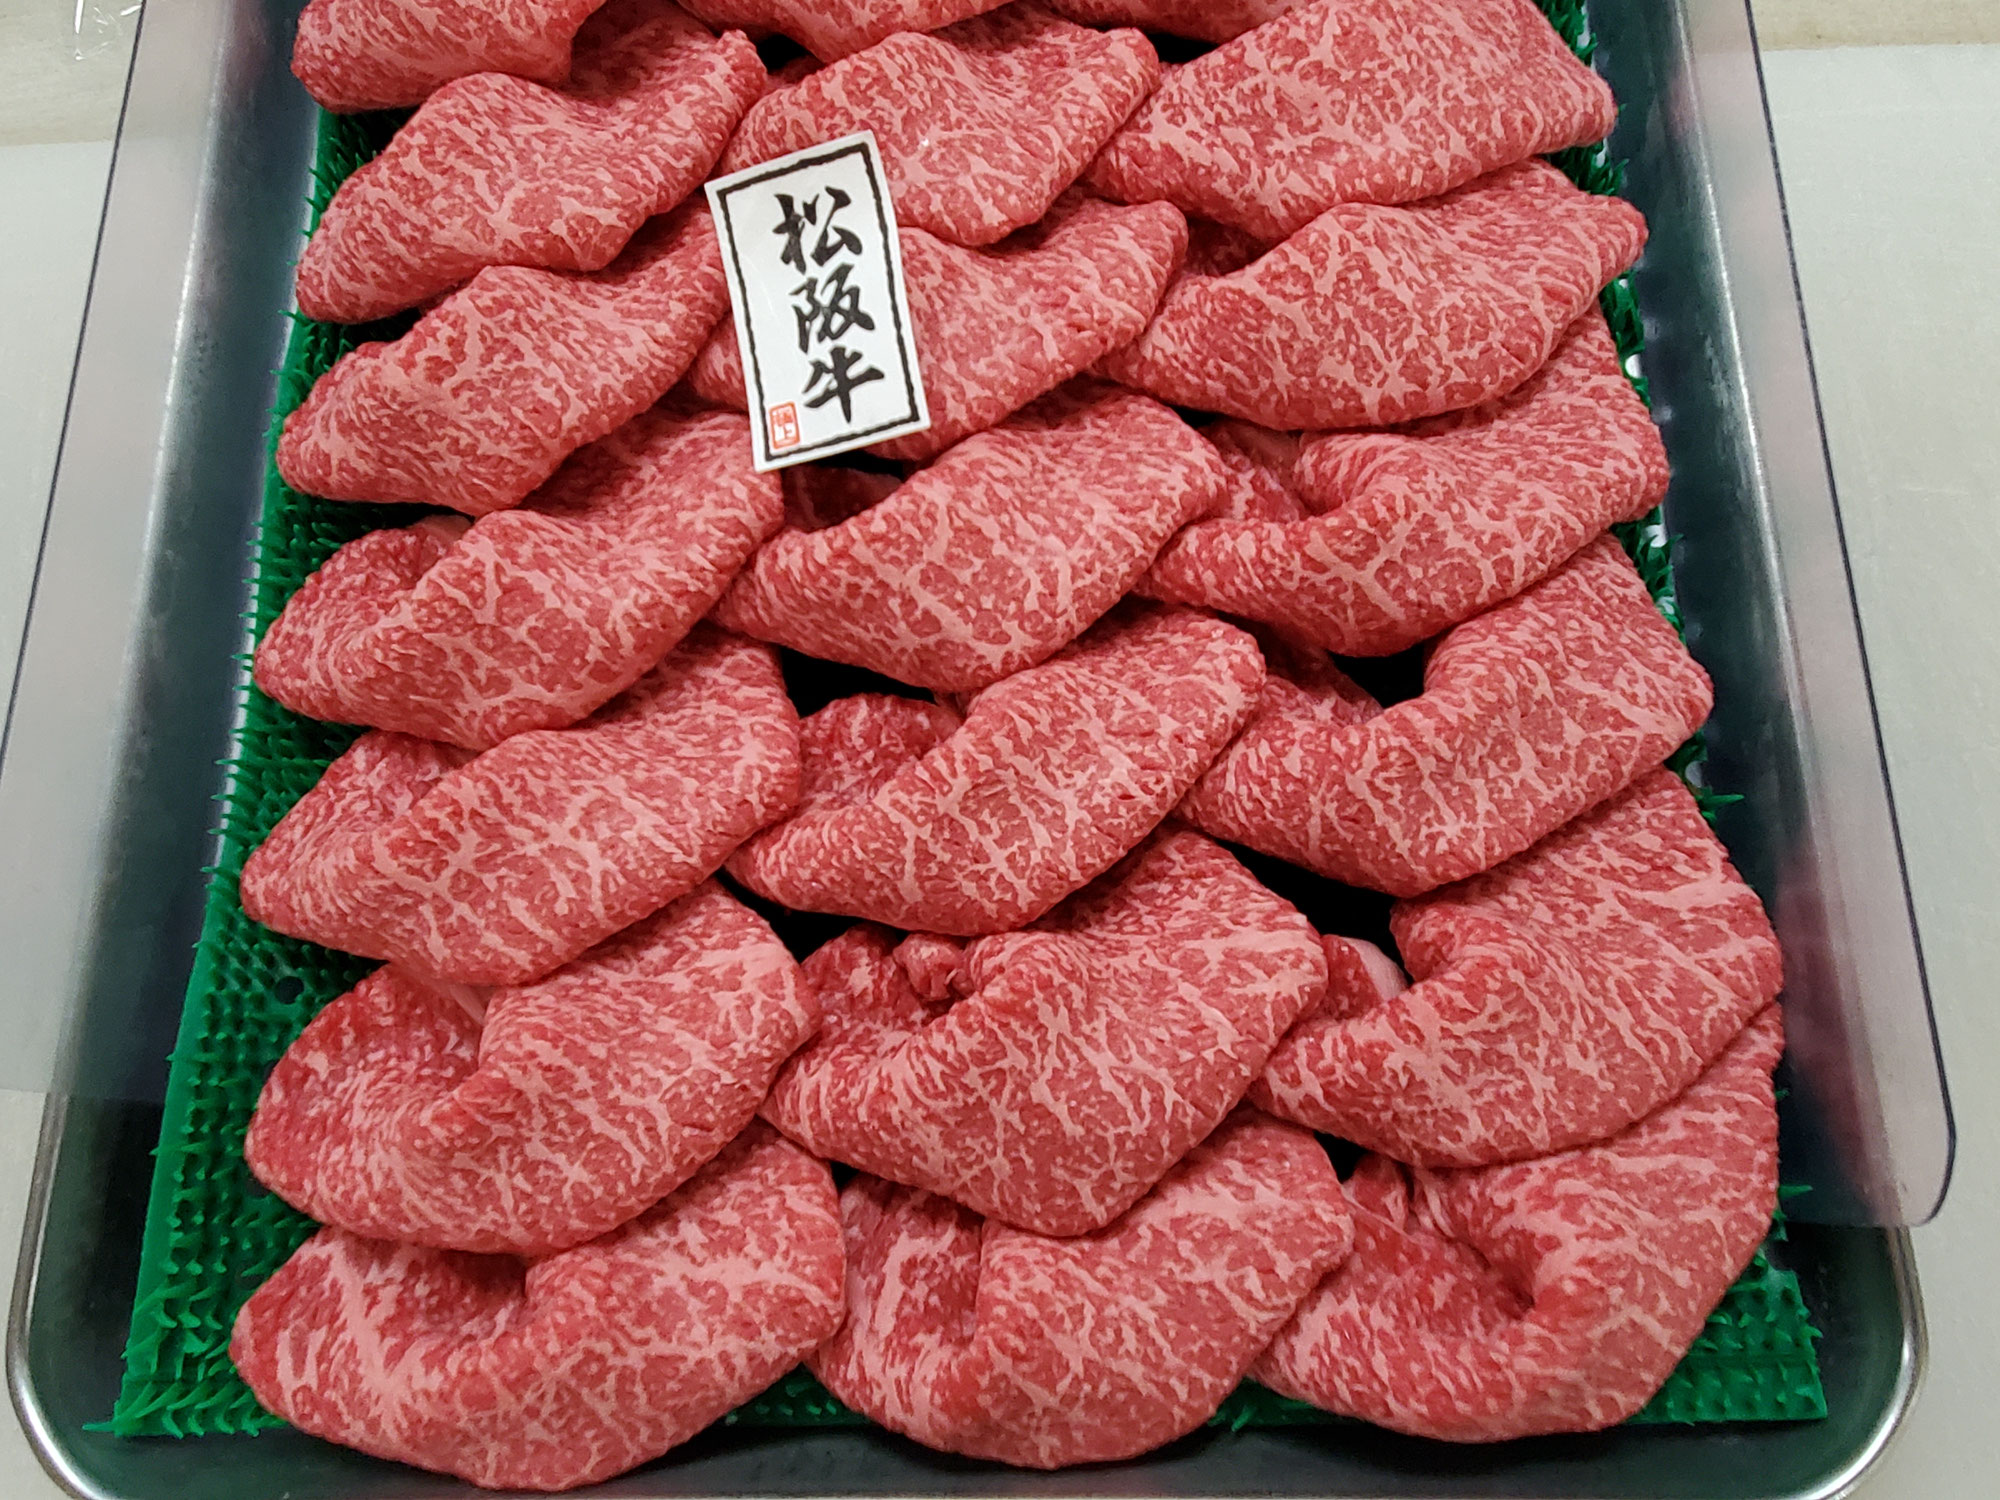 販売中の松阪牛内もも肉